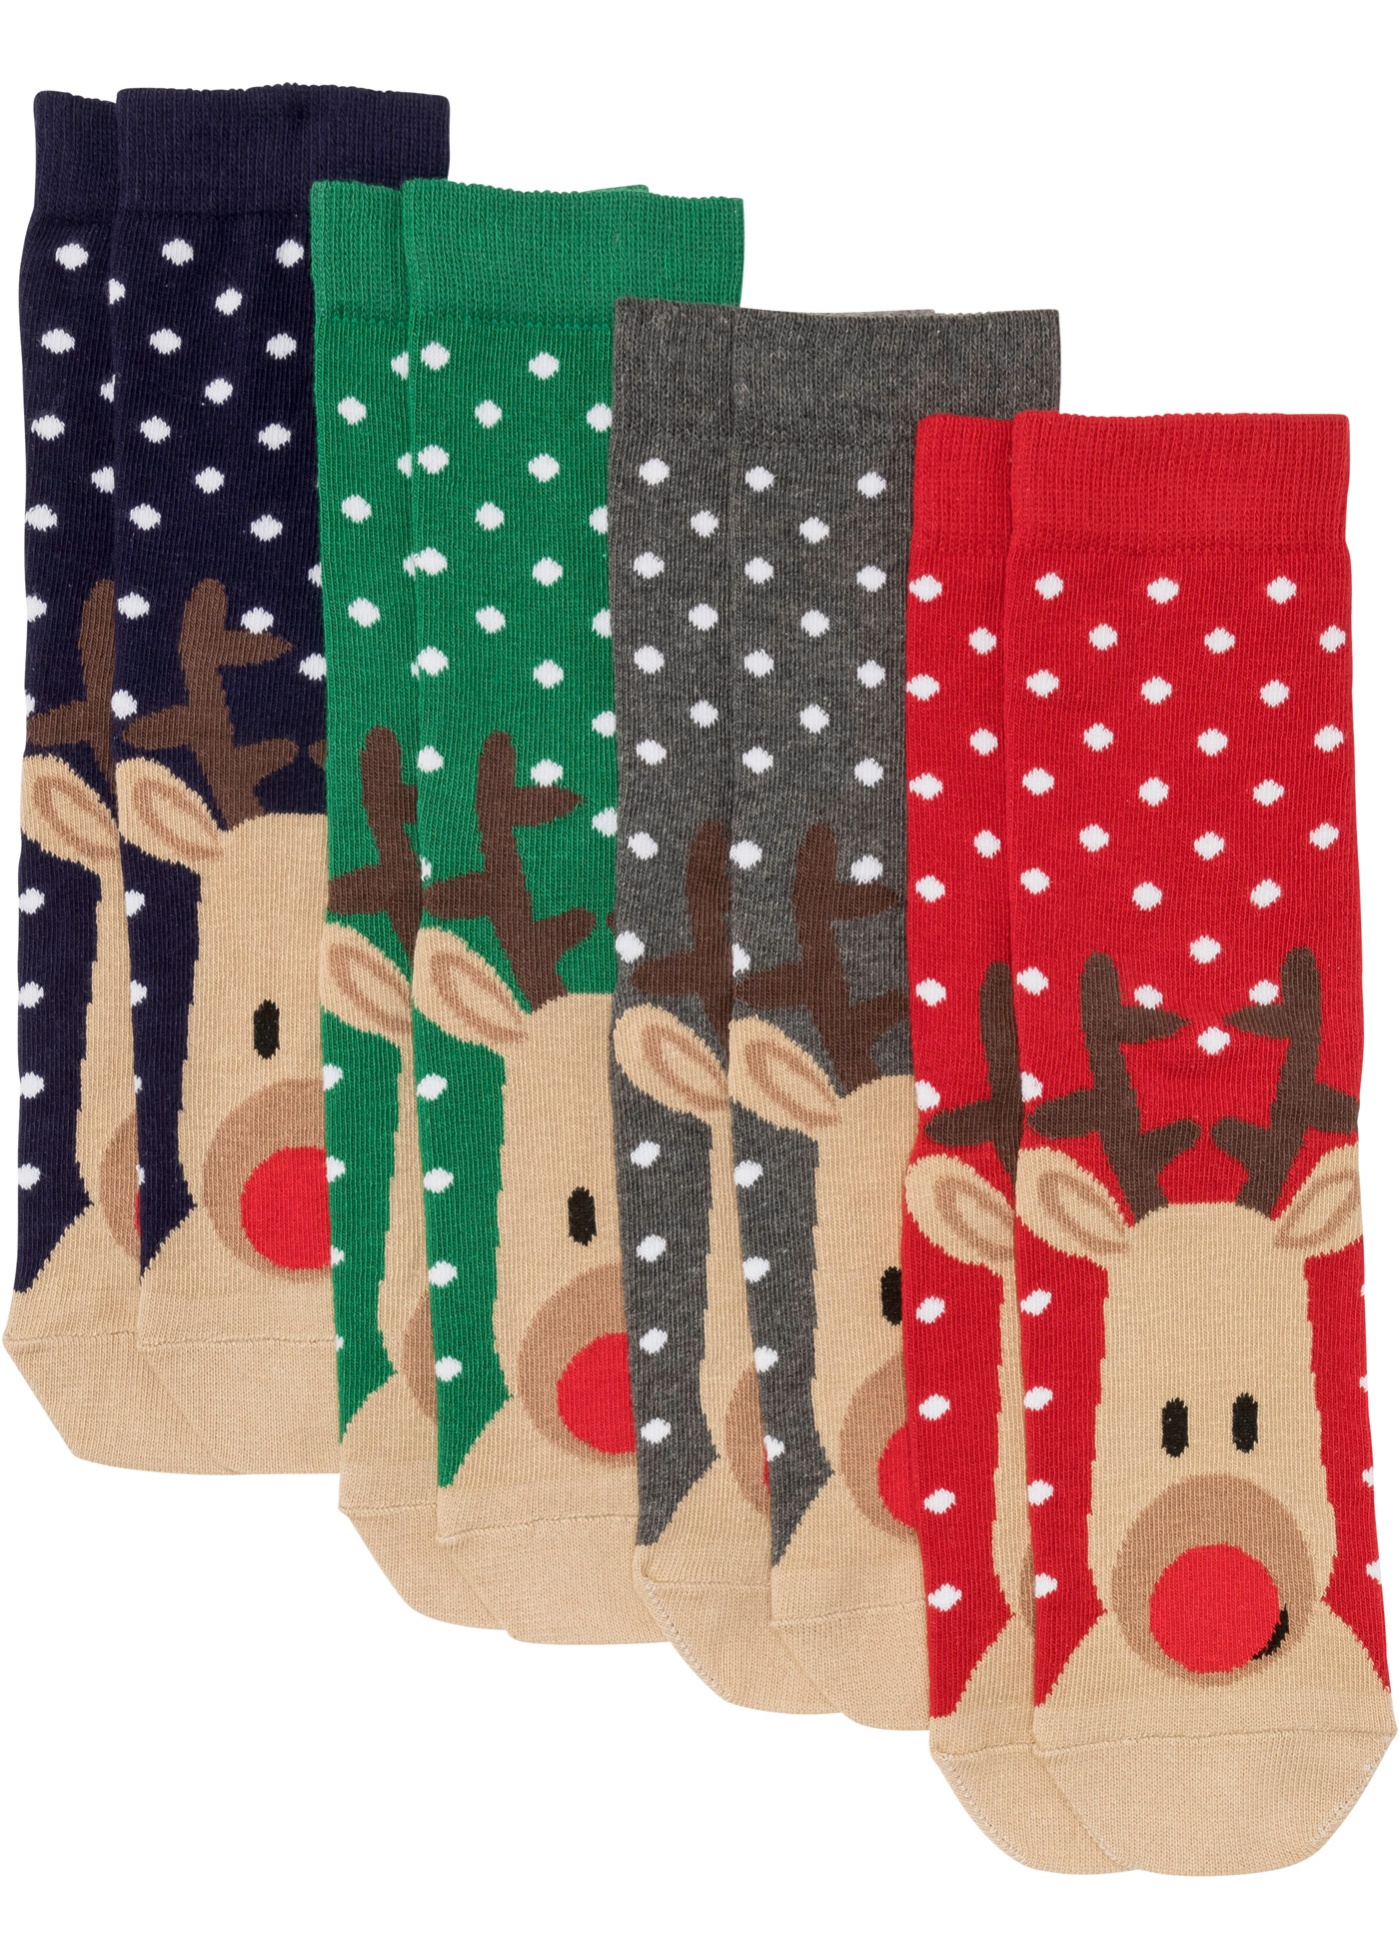 Ajándékkártya - Karácsonyi zokn (4 pár) ajándékkártyával